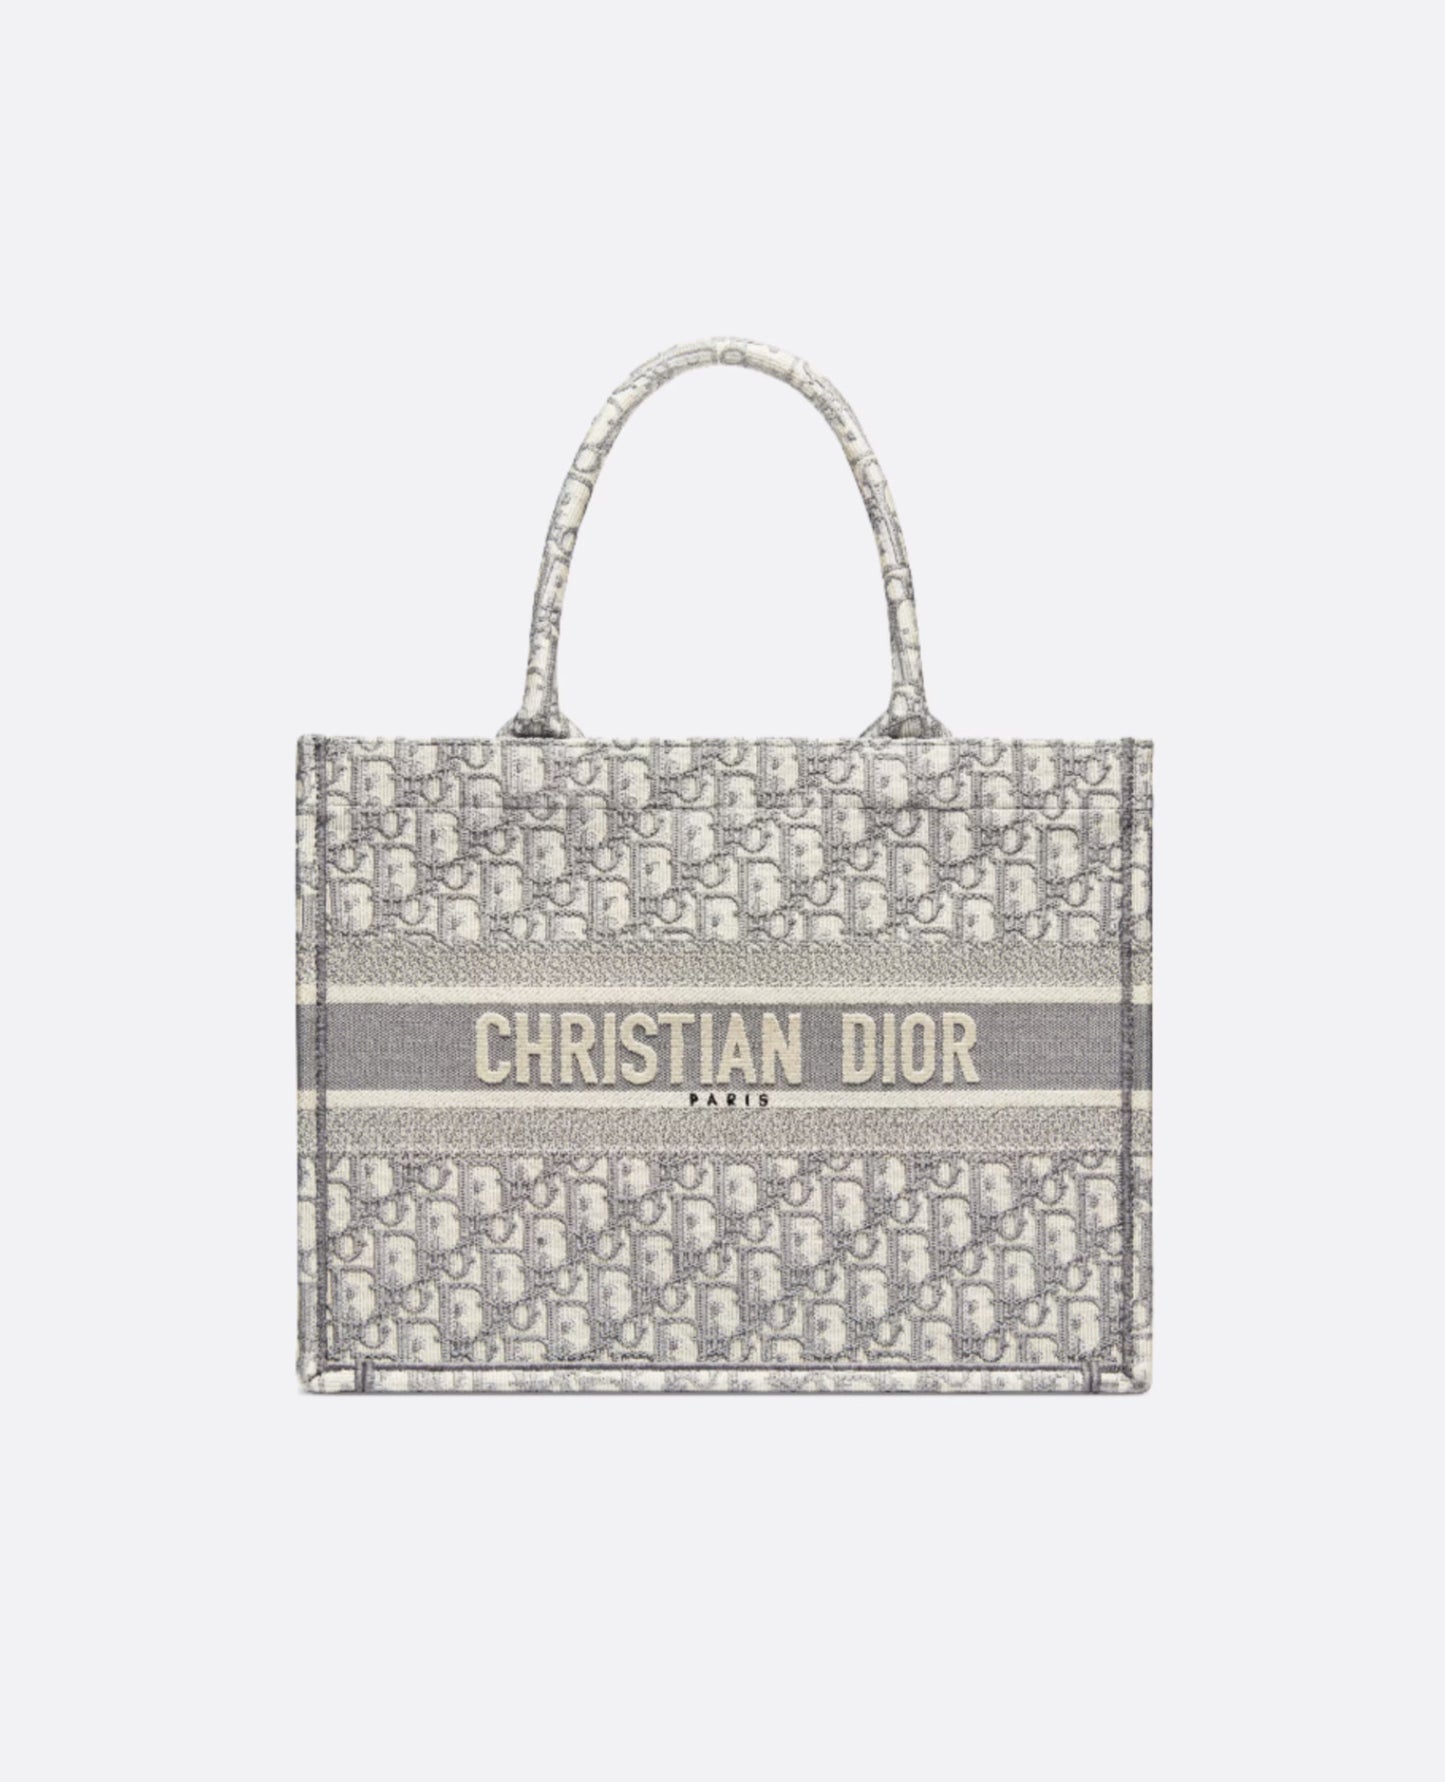 Christian Dior Medium Book Tote Bag